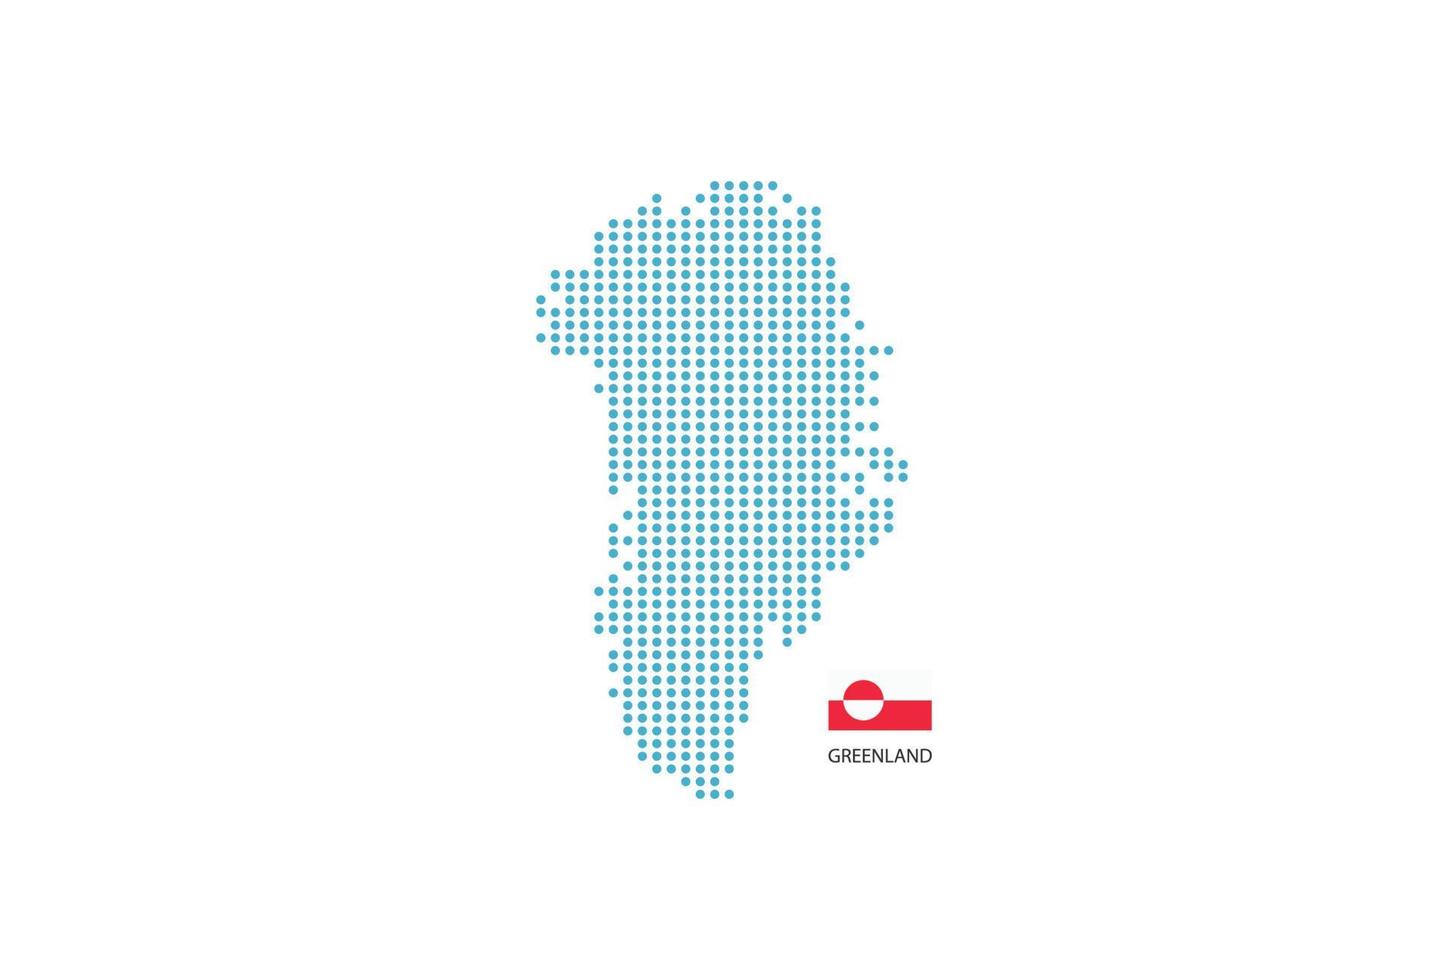 diseño de mapa de groenlandia círculo azul, fondo blanco con bandera de groenlandia. vector